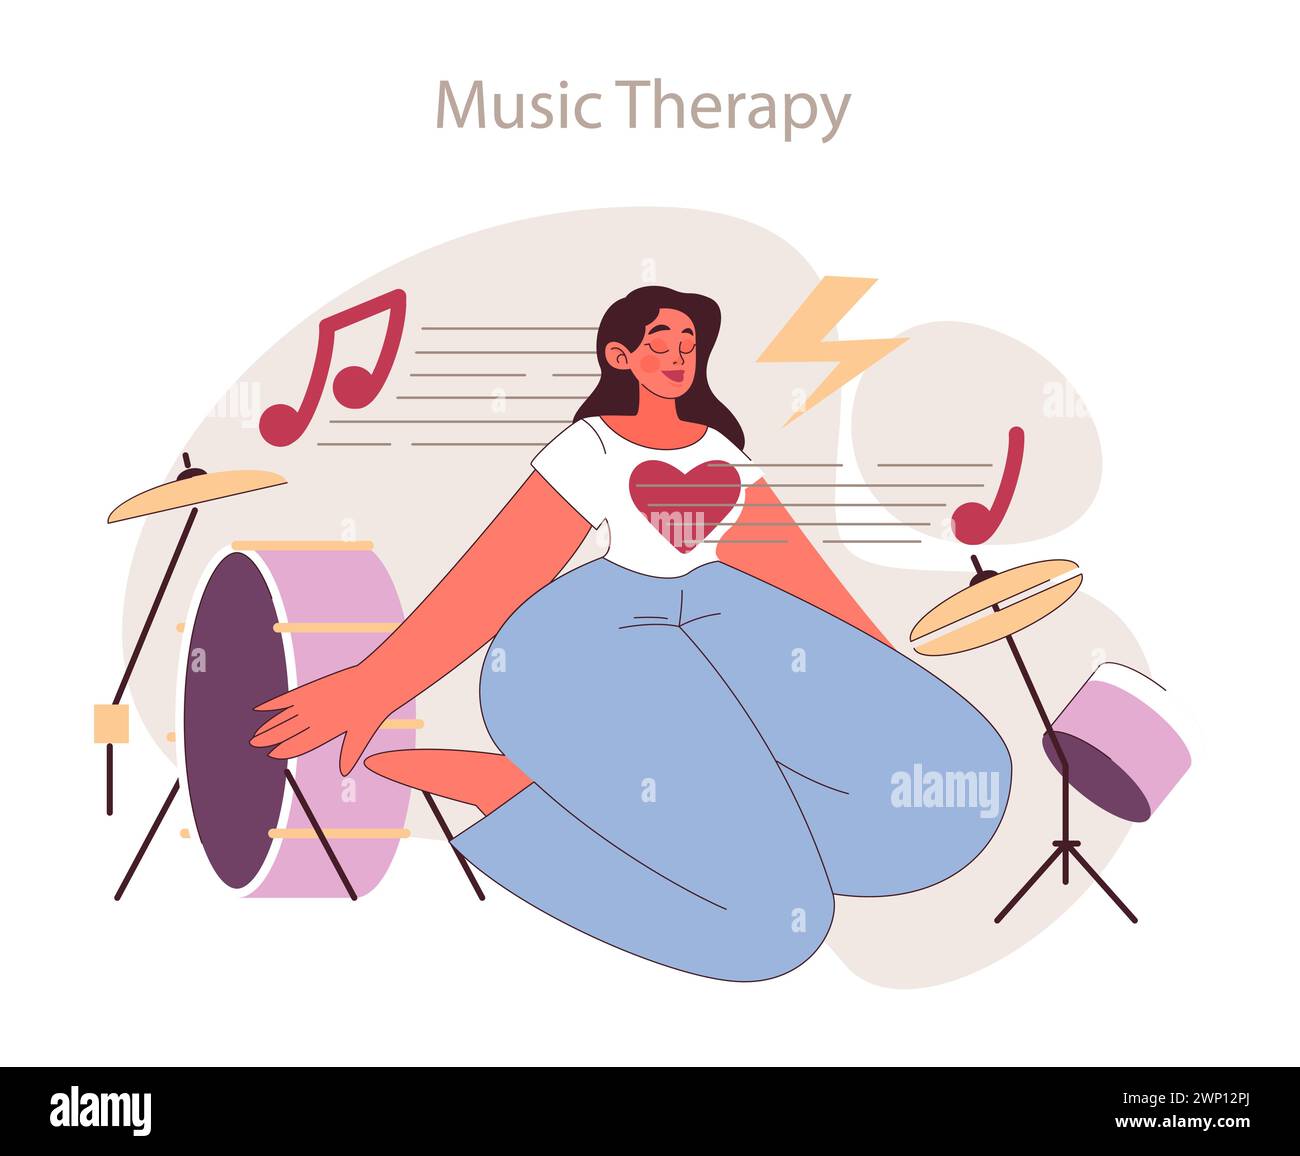 Concetto di musicoterapia. Armonizzare le emozioni con la guarigione ritmica. Suoni espressivi che favoriscono la crescita personale. Illustrazione Vettoriale